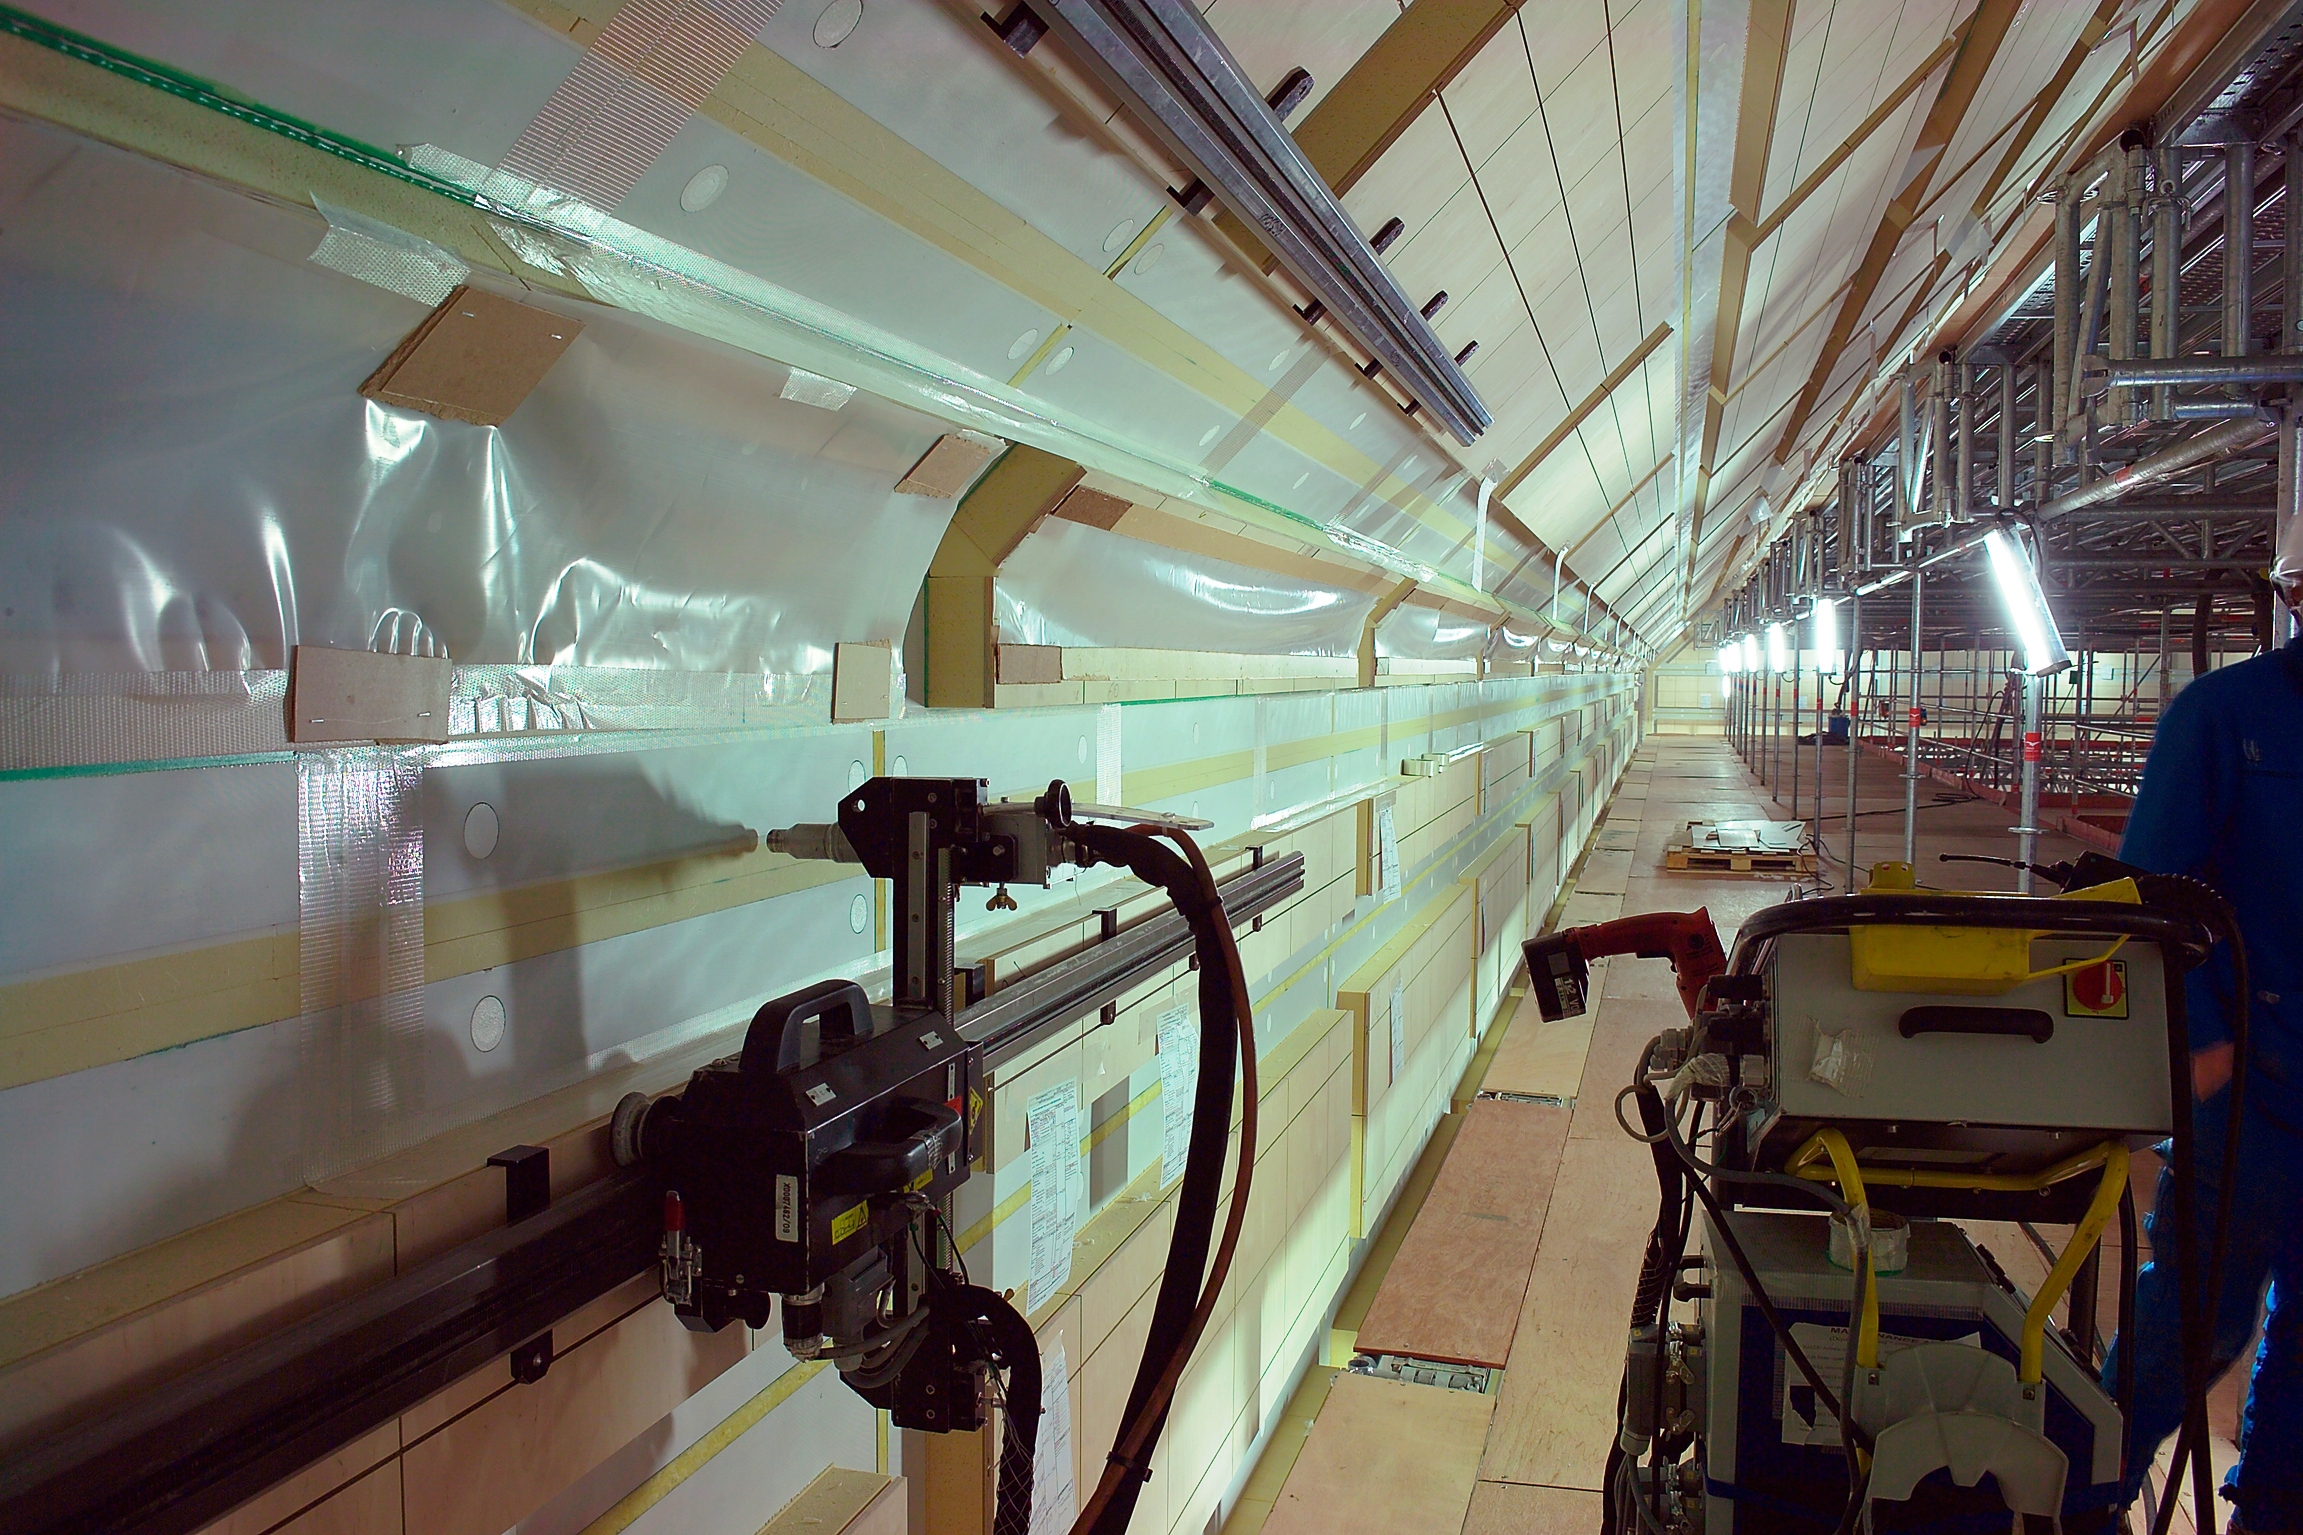 Bild 6: Insgesamt reinigten und aktivierten die robotergesteuerten Openair-Plasma-Systeme eine Fläche von 12.000 m2 pro LNG-Großtanker (Bild: Yves Guillotin)